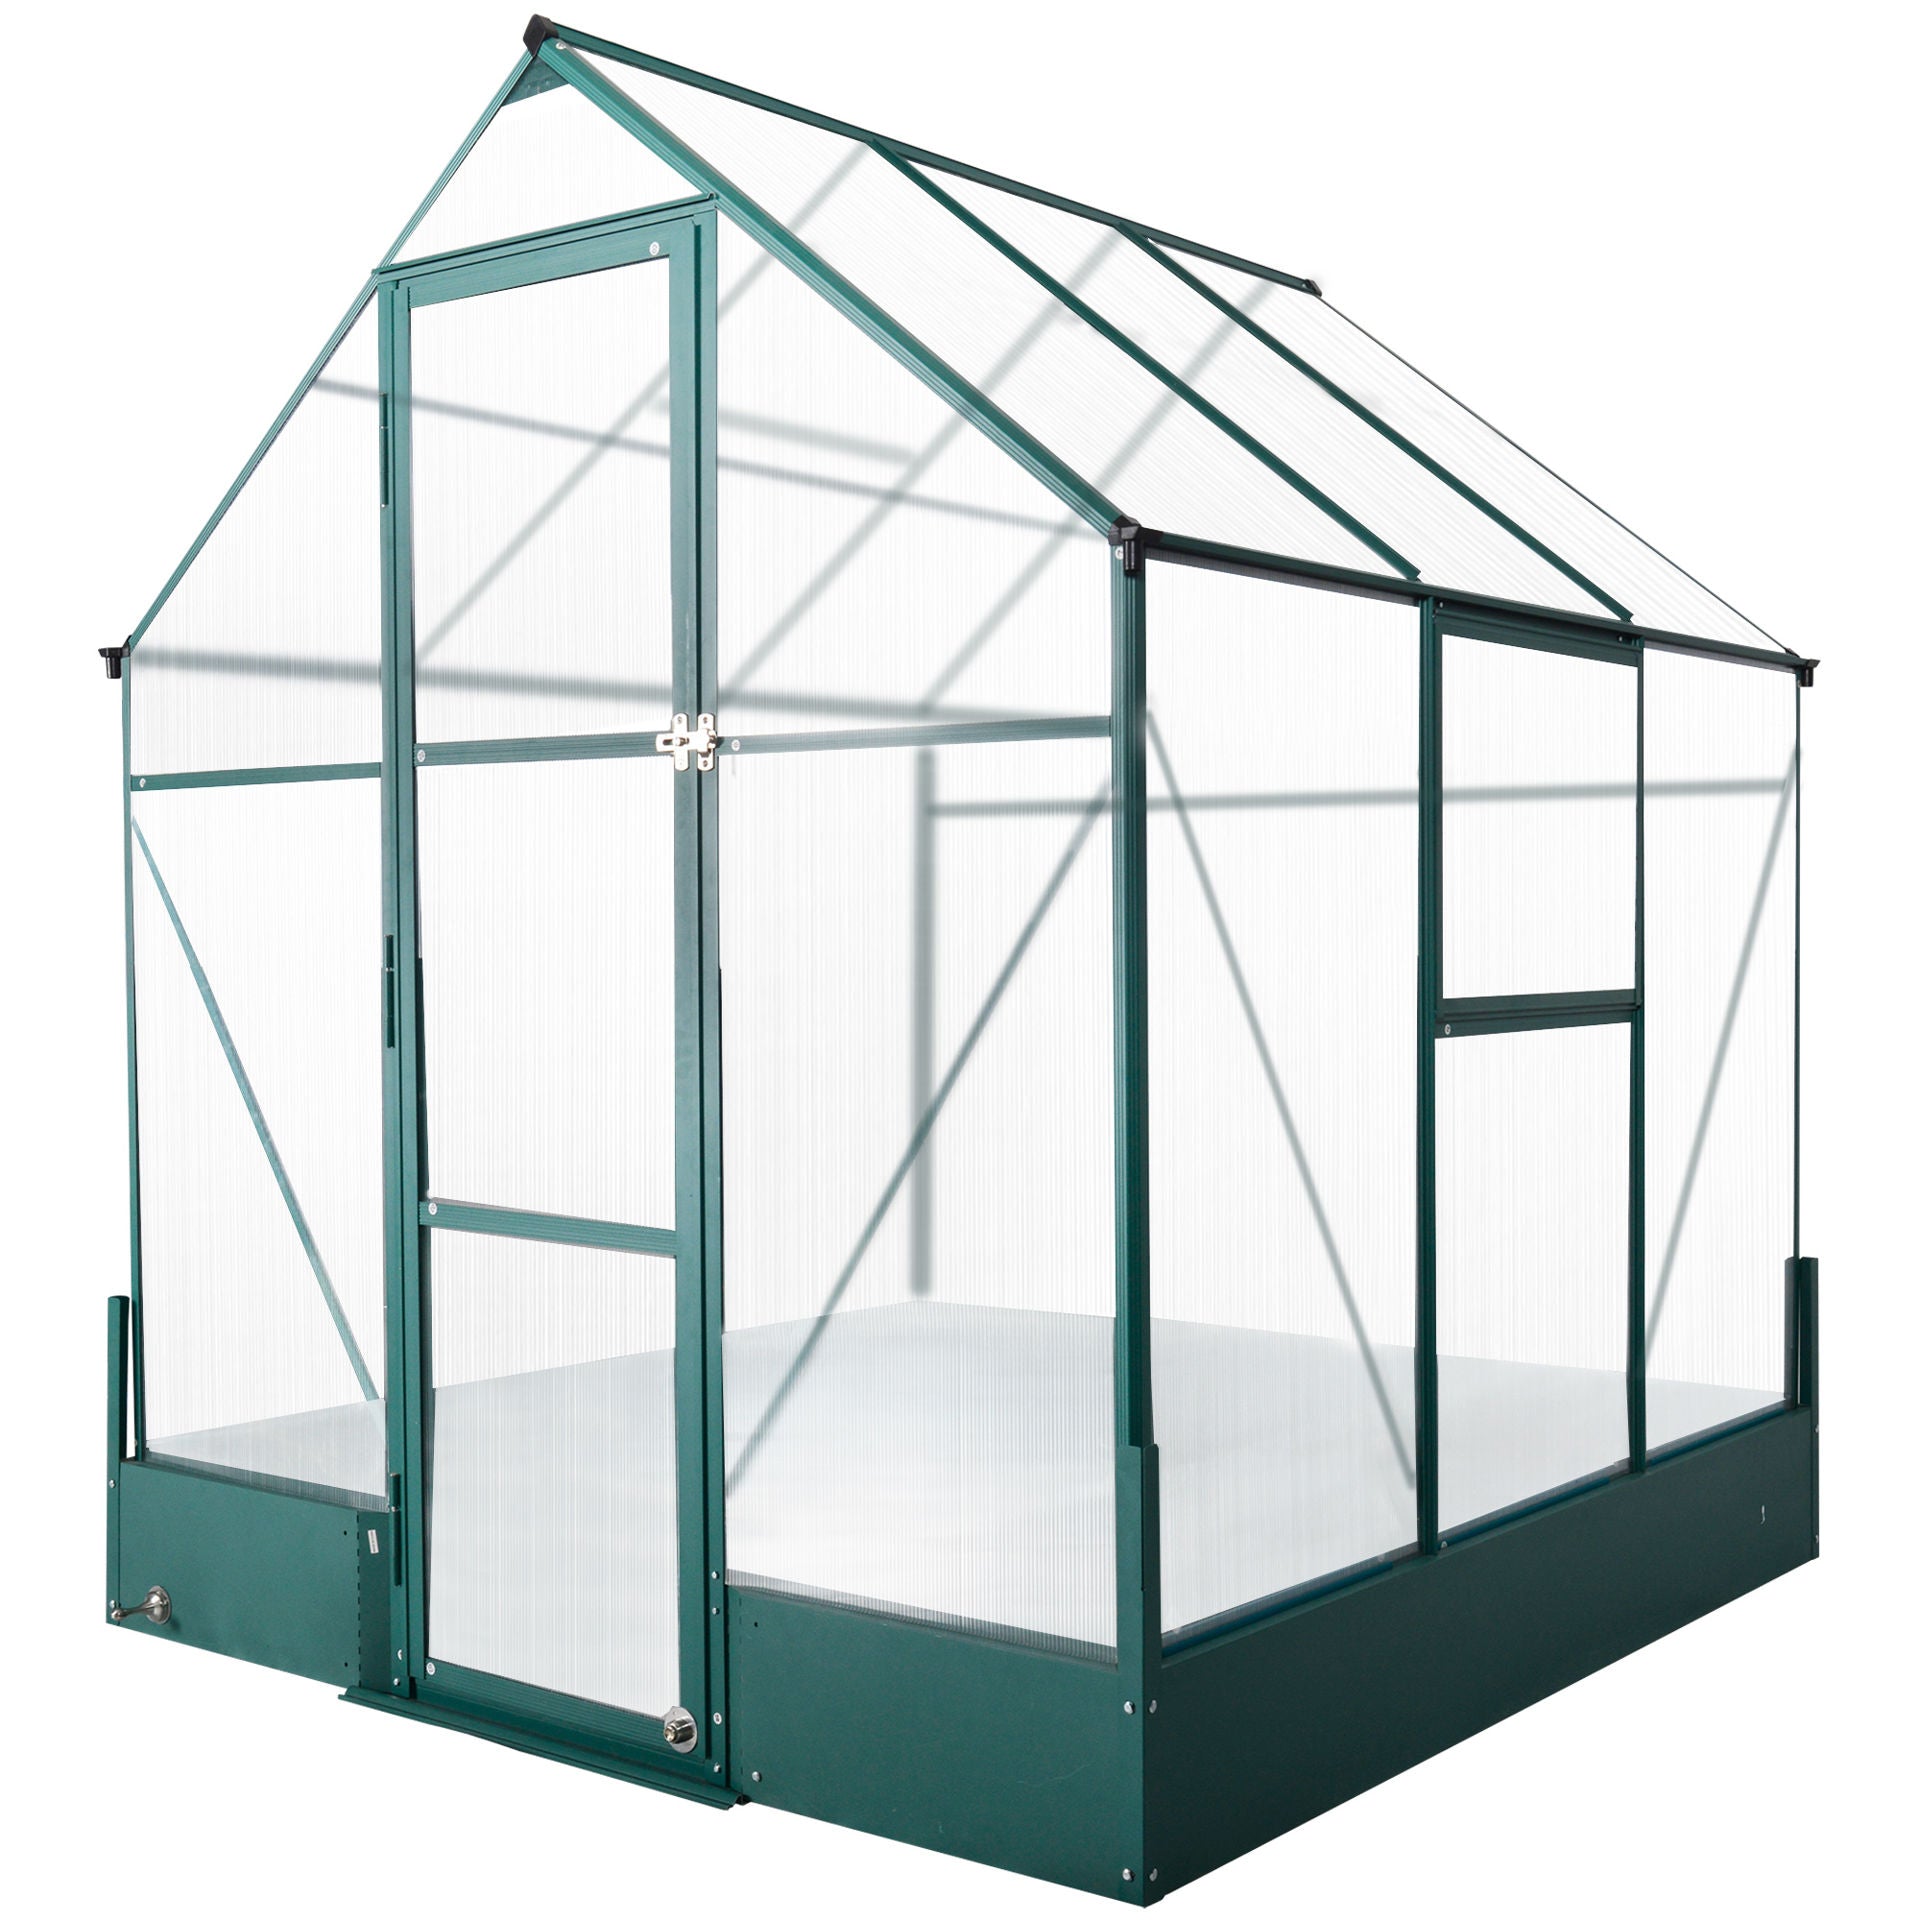 Nancy's Palmar Greenhouse for the Garden - Transparent, Green - PC, Aluminum - 74.8 cm x 74.8 cm x 86.61 cm